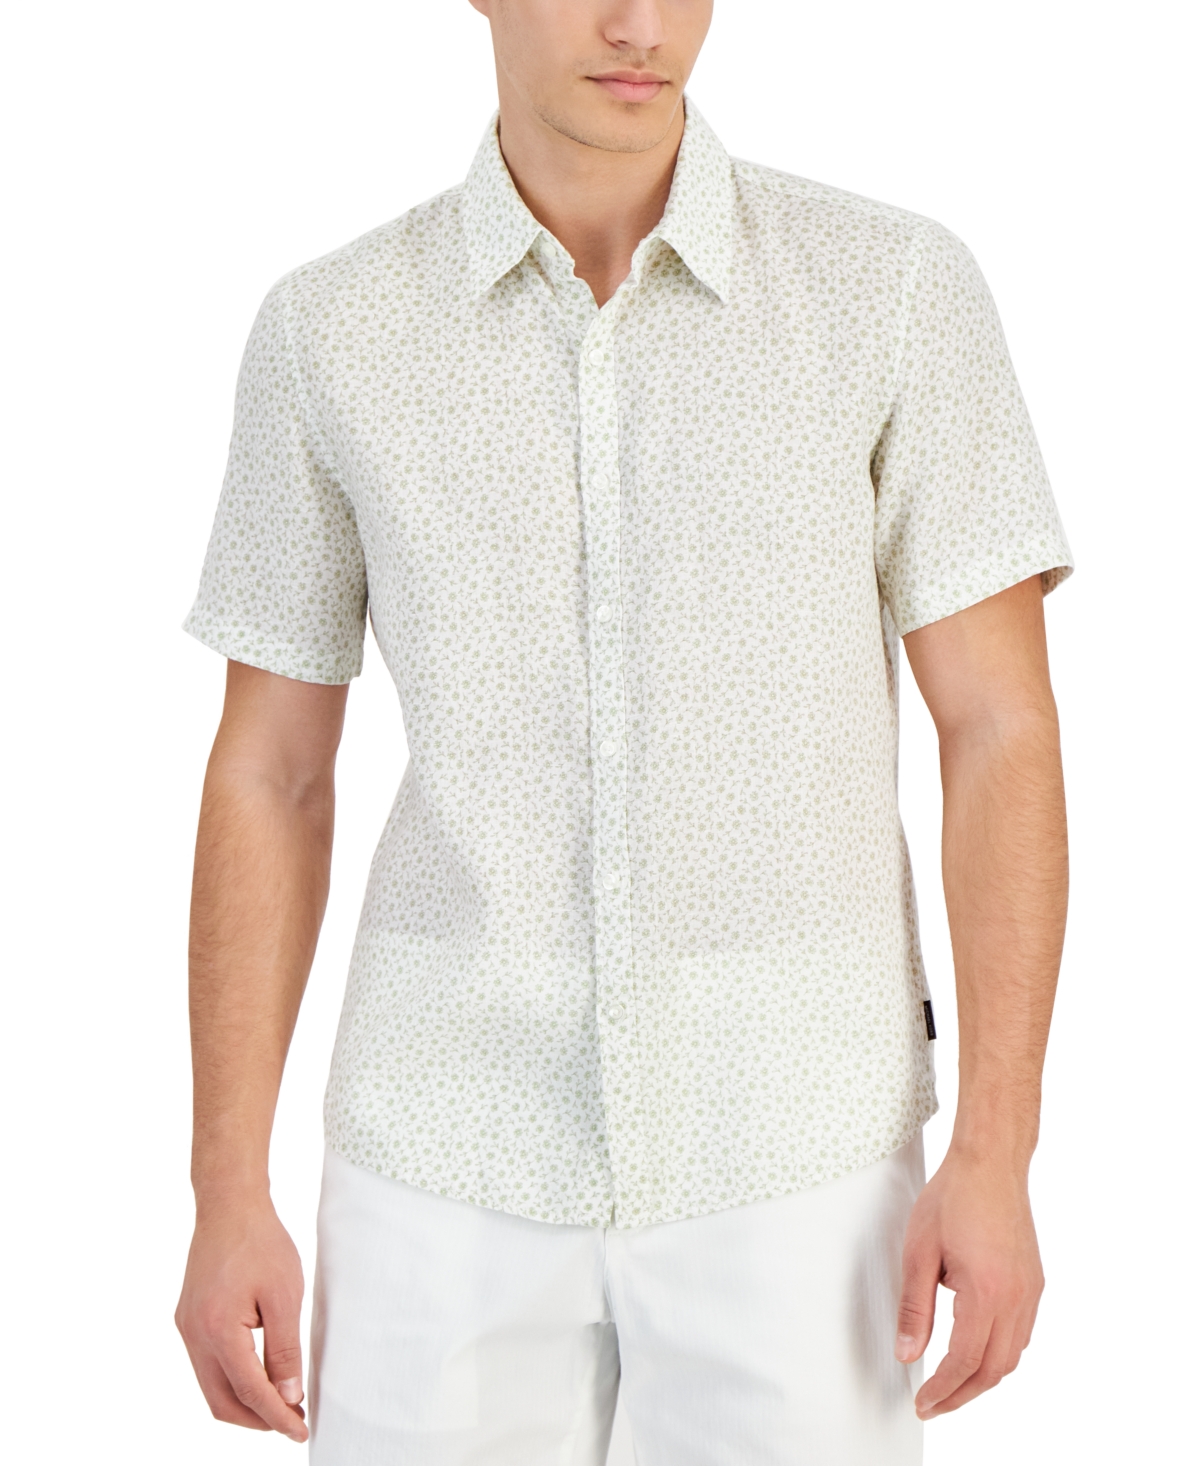 Men's Slim-Fit Floral Ditsy-Print Button-Down Linen Shirt - Light Sage